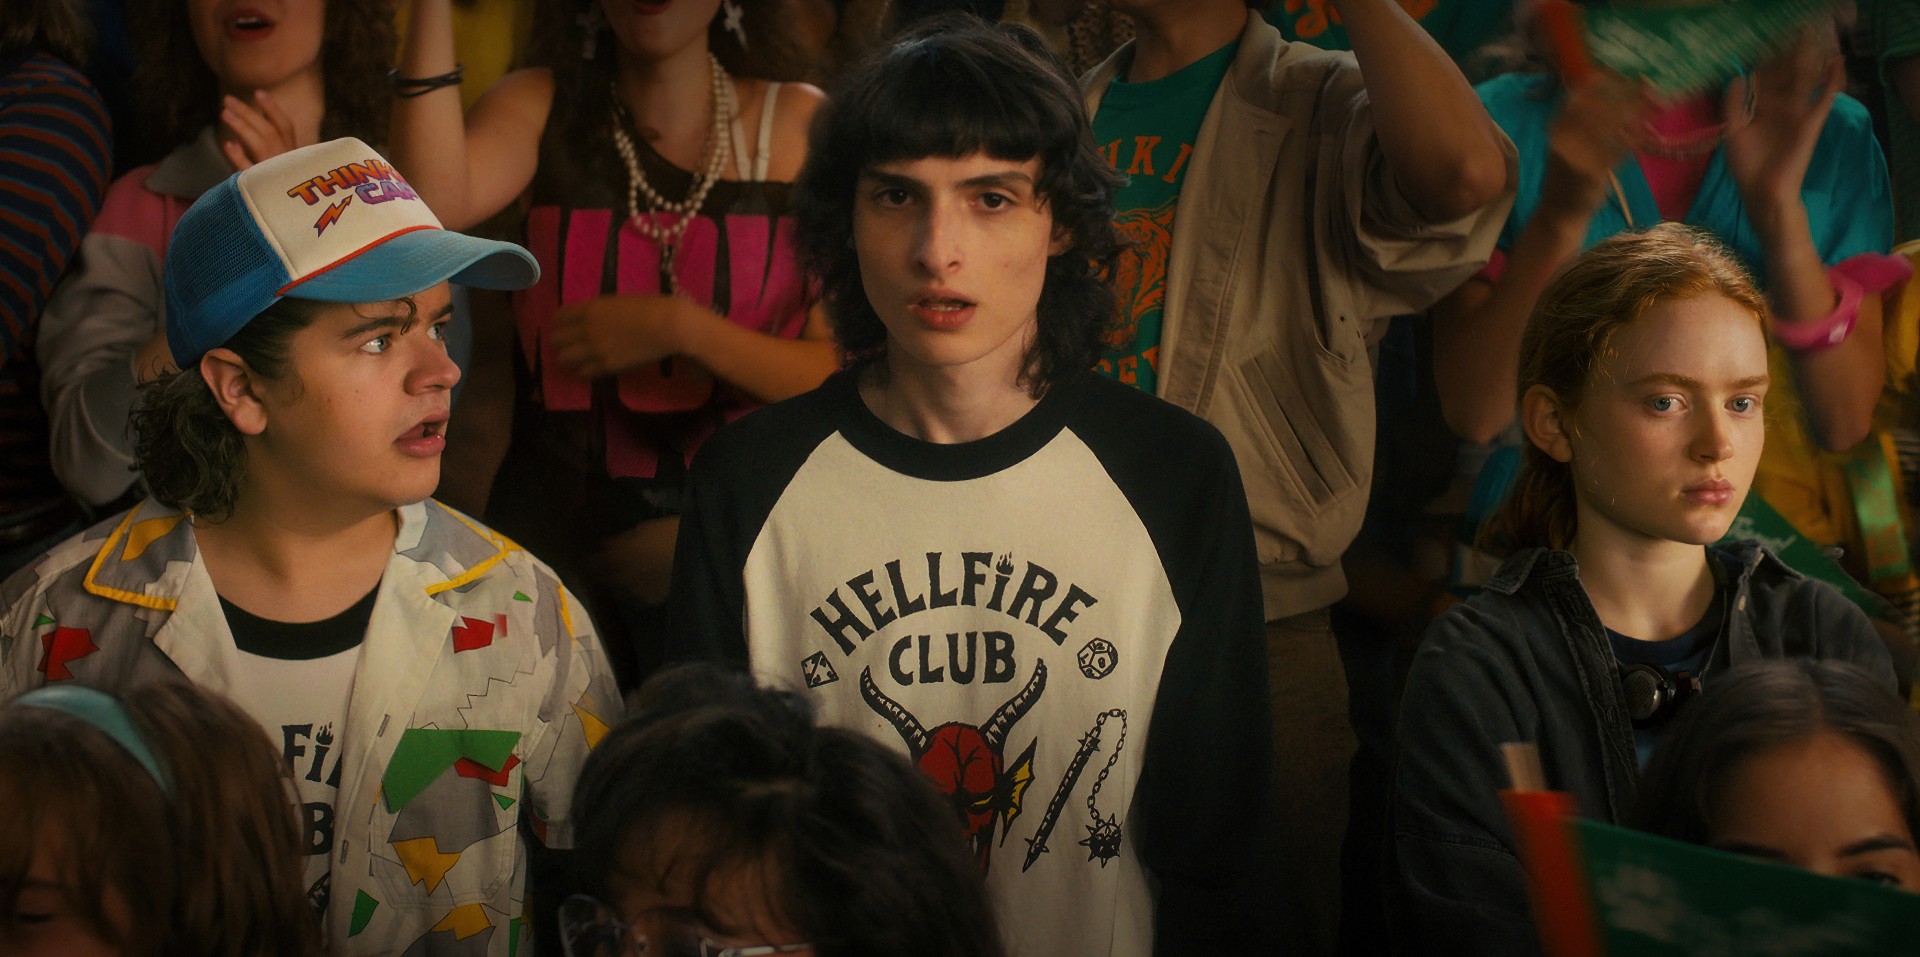 Gaten Matarazzo, Finn Wolfhard e Sadie Sink estão no meio da multidão durante um comício do ensino médio em uma cena de Stranger Things 4.